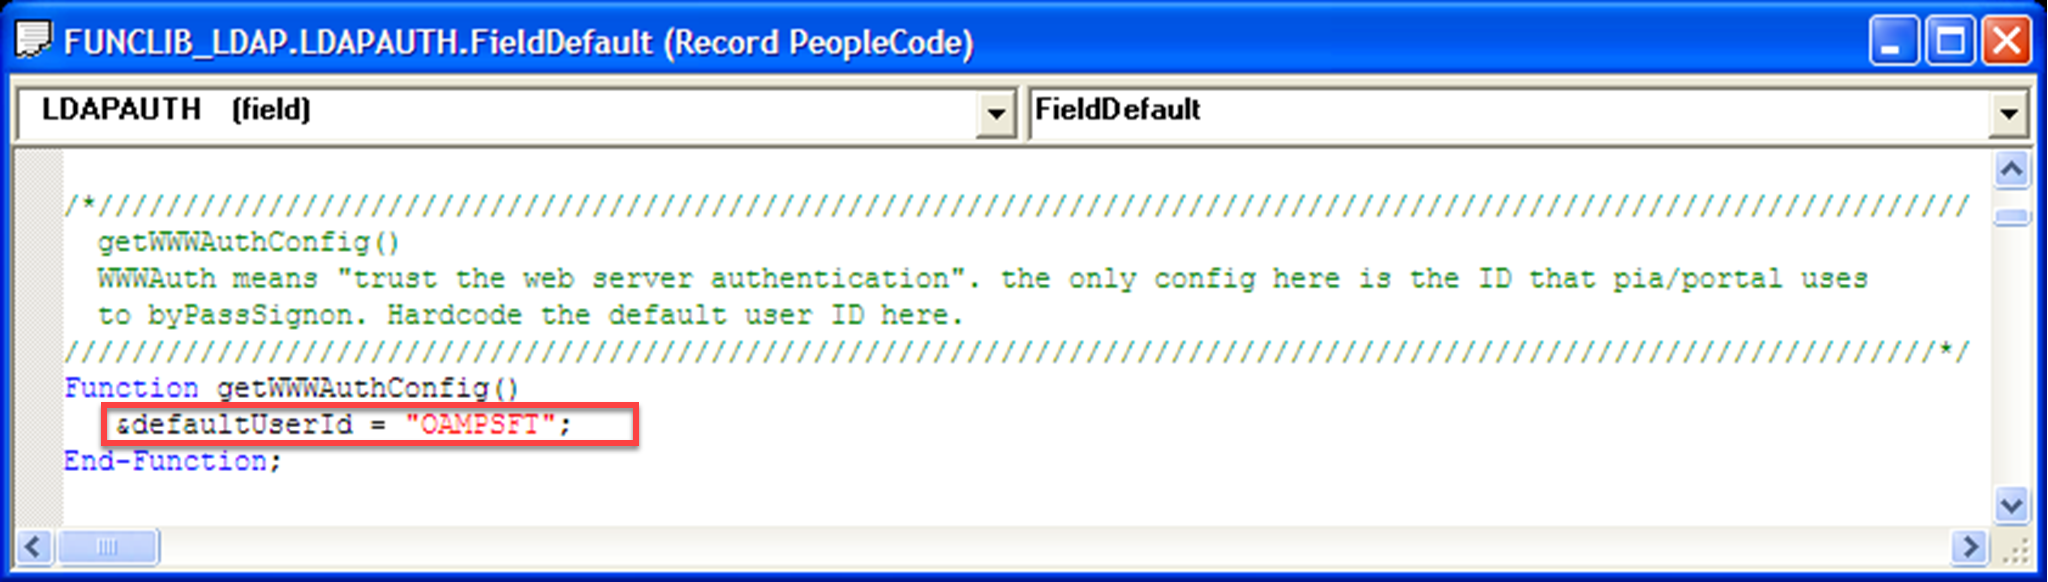 Captura de tela do valor de uma ID de usuário padrão igual a OAMPSFT em Função.